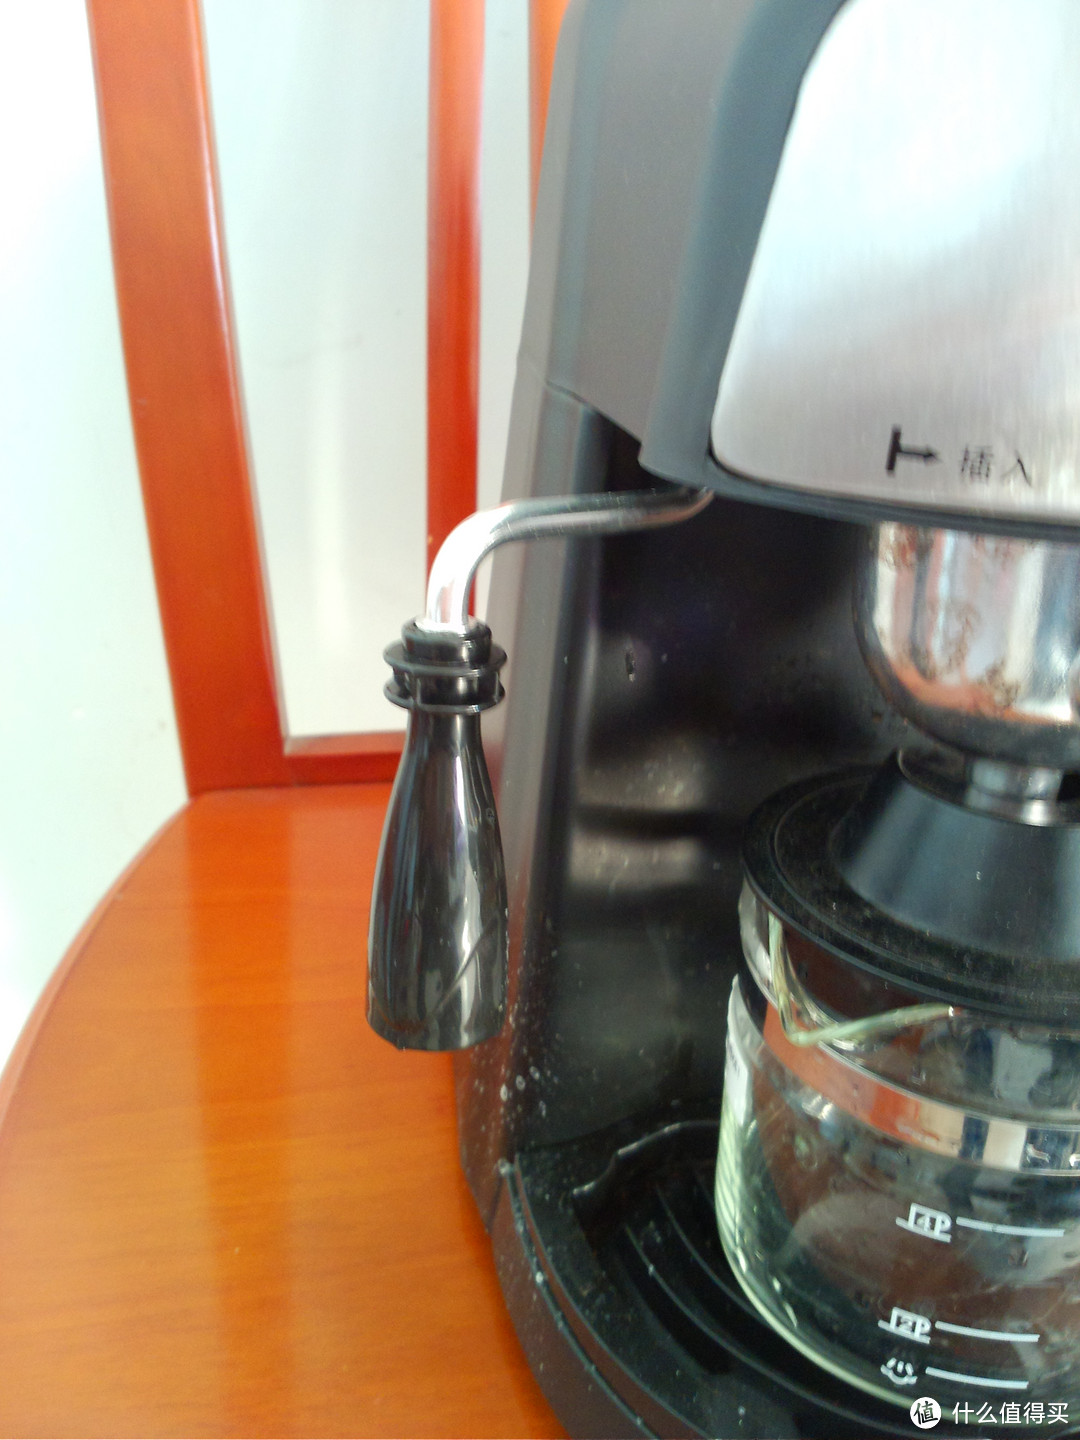 品质生活的最低需求：Fxunshi 华迅仕 MD-2000 意式蒸汽压力咖啡机 和 磨豆机